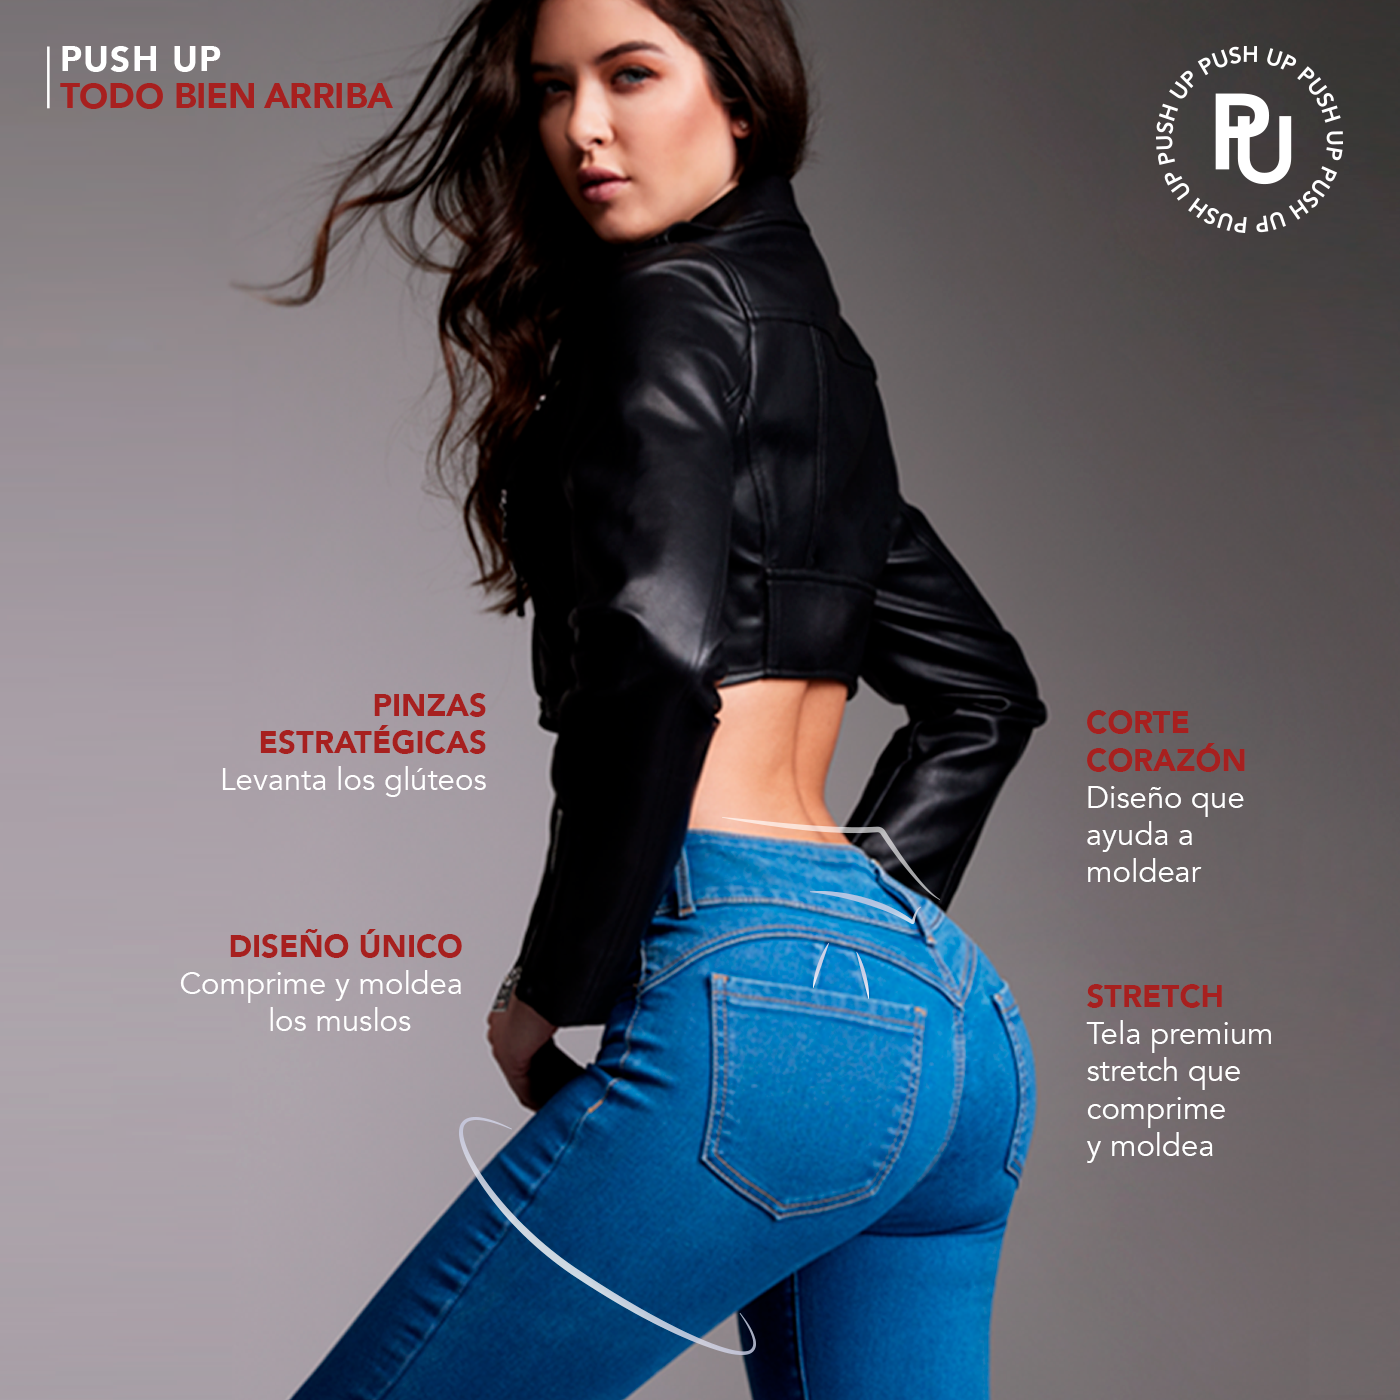 Pantalones push up: qué son y qué efecto hacen - Bekia Moda